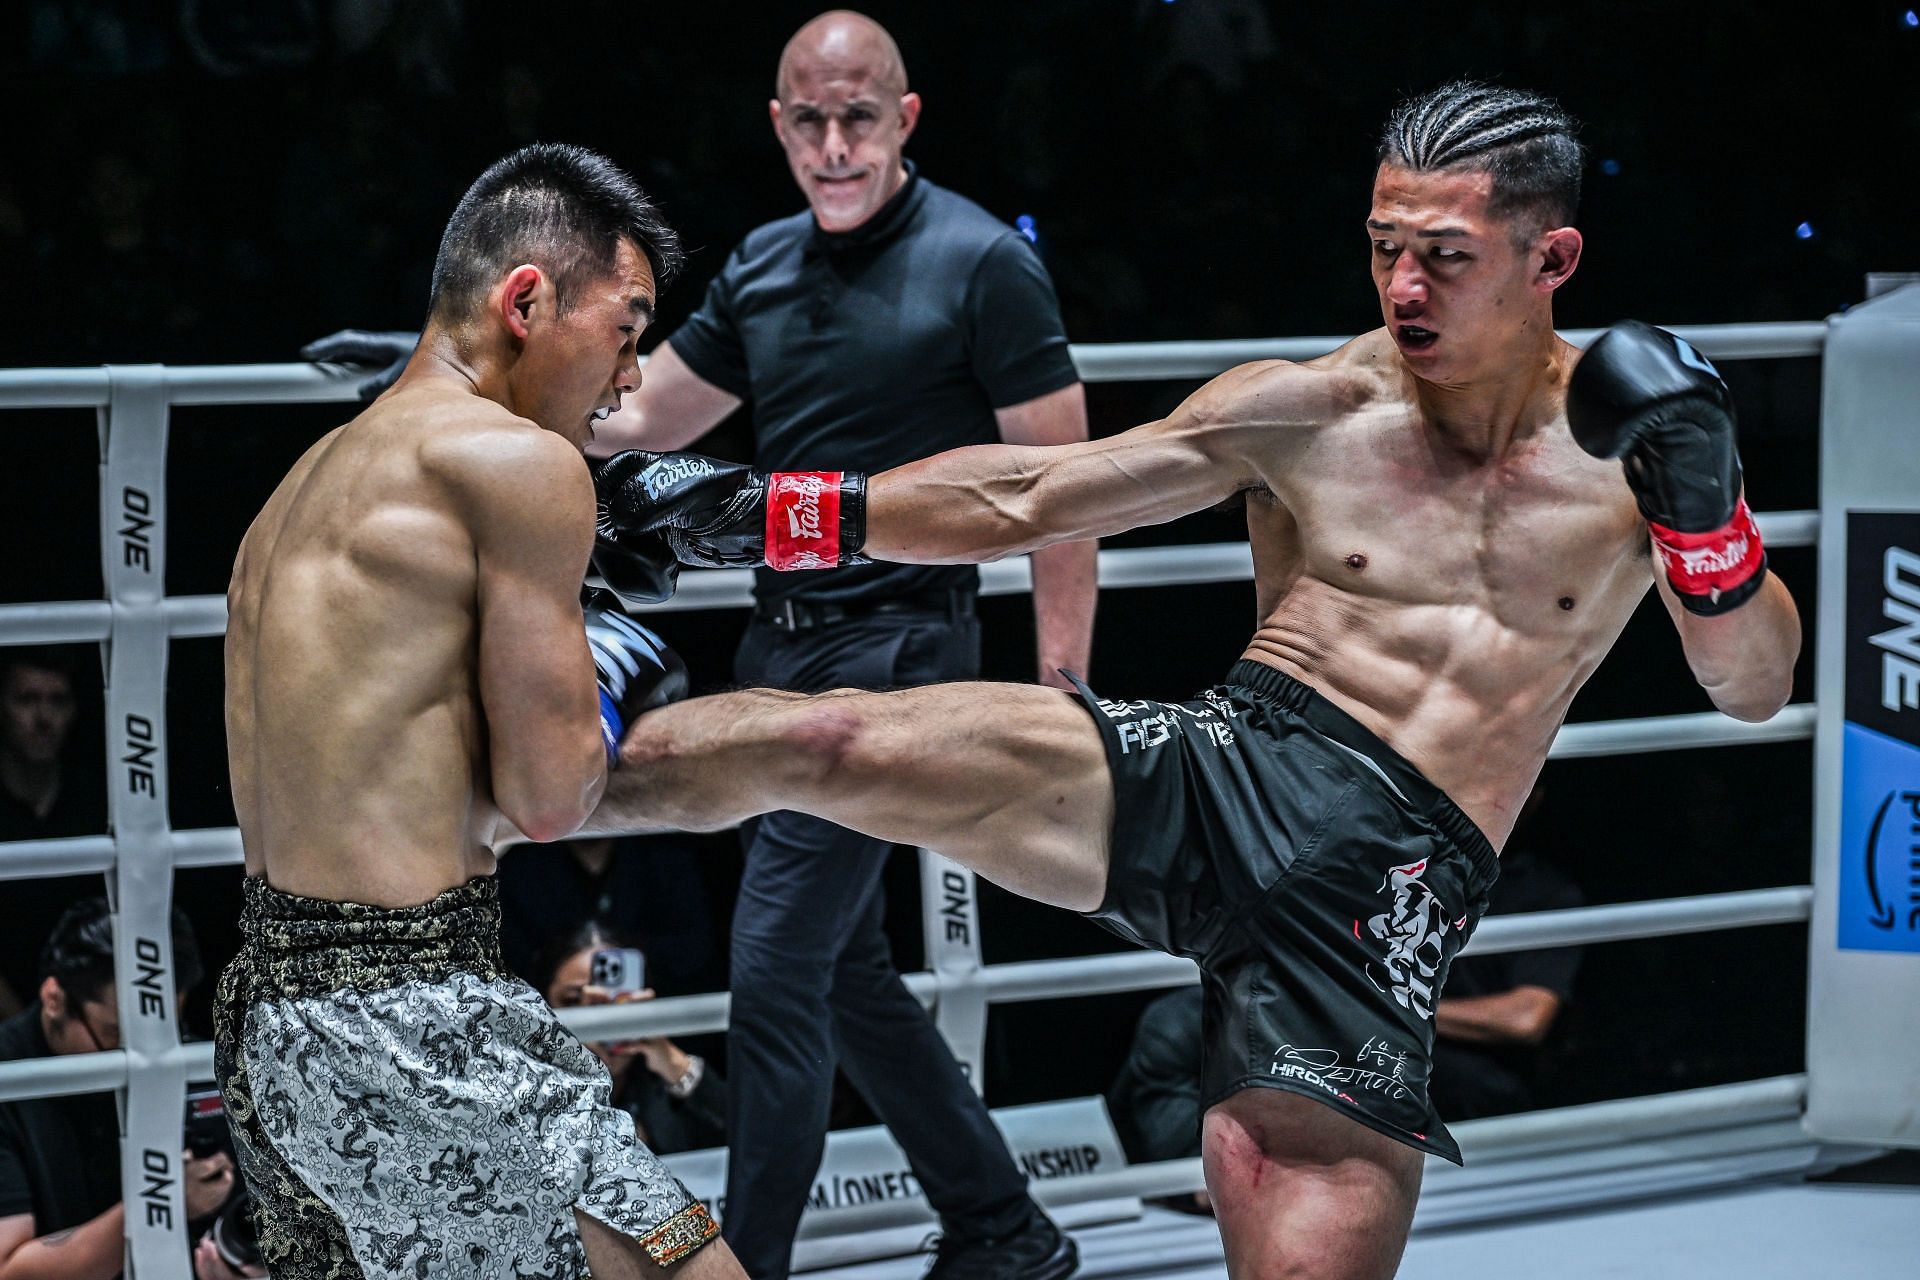 Hiroki Akimoto lands a kick on Wei Rui at ONE Fight Night 22.